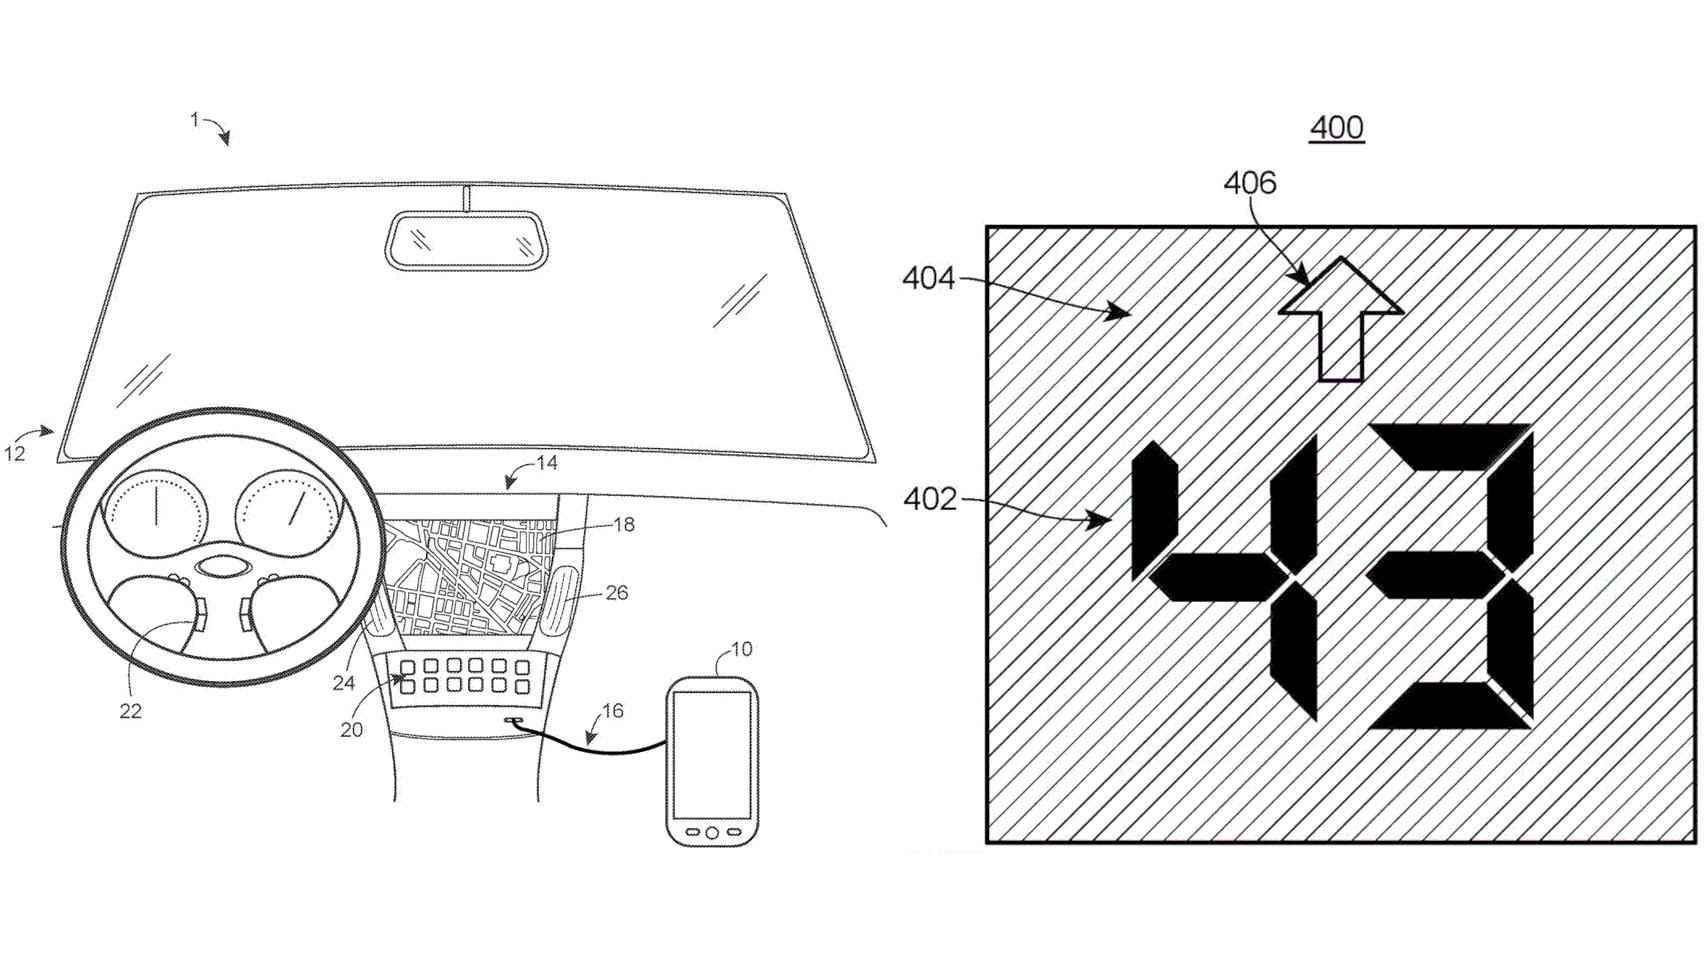 La patente de Google detalla un sistema que indica una velocidad objetivo en el coche